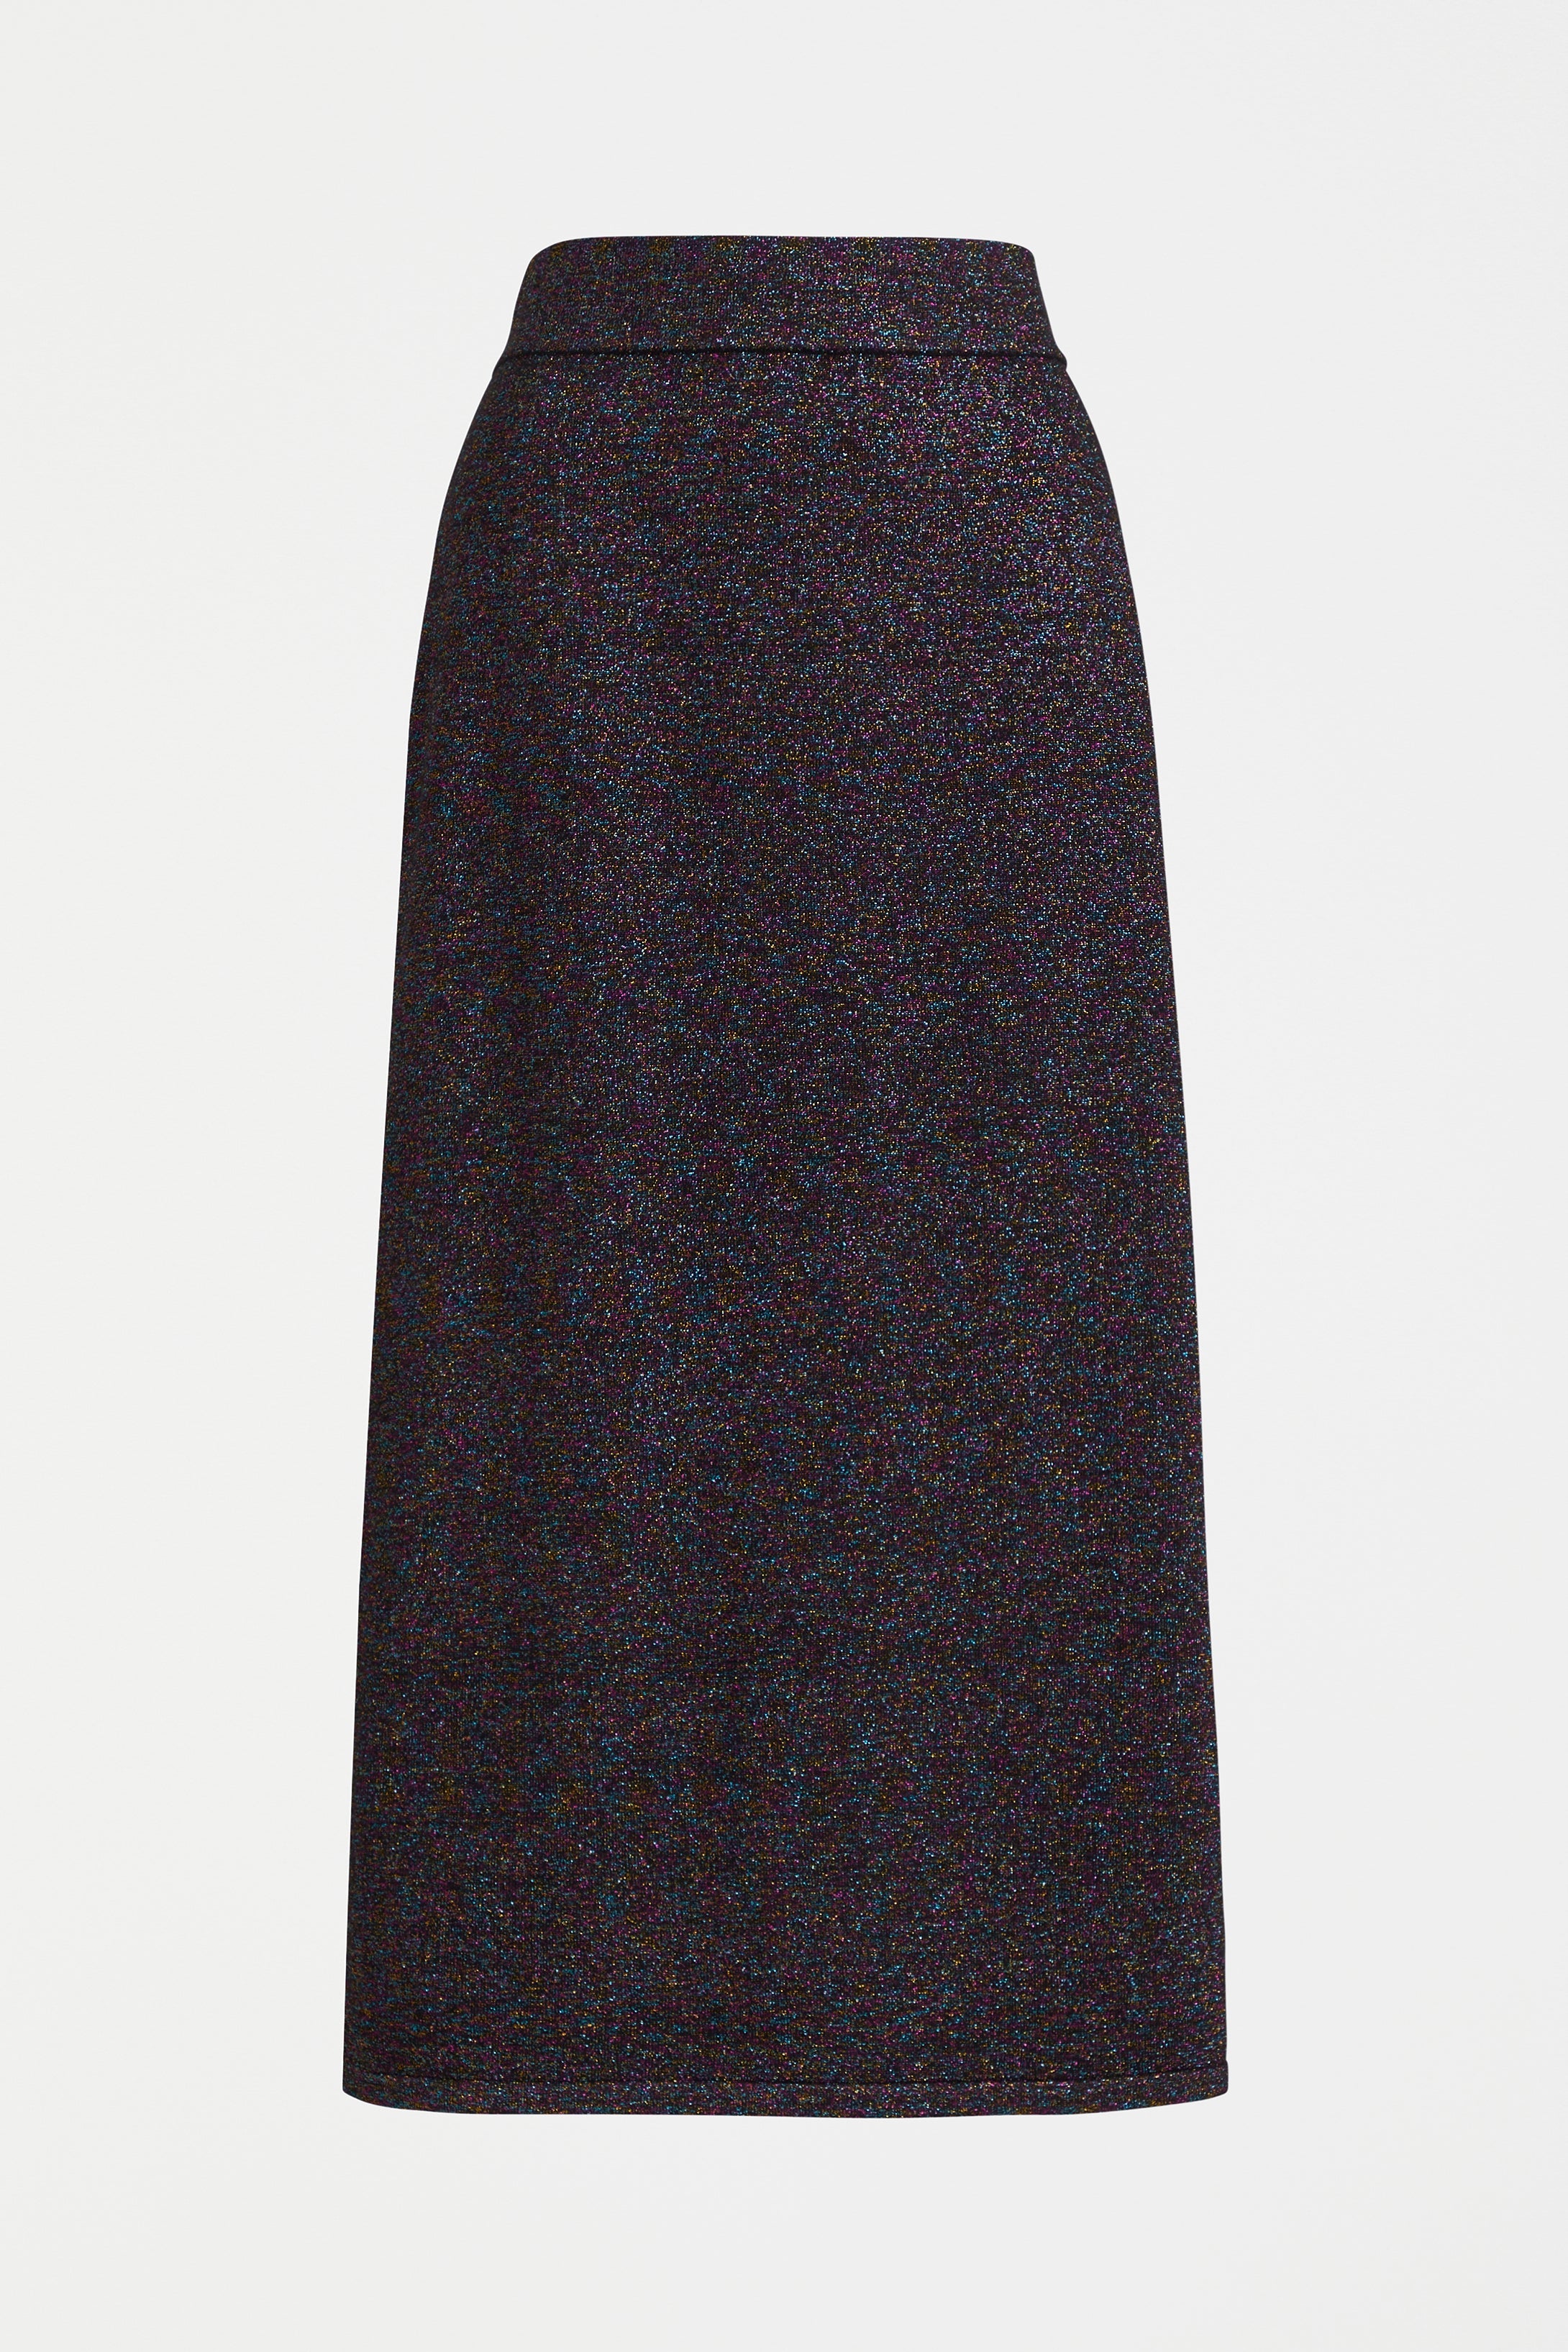 Shop The Galaxy Metallic Thread Knit Pencil Skirt | ELK AU